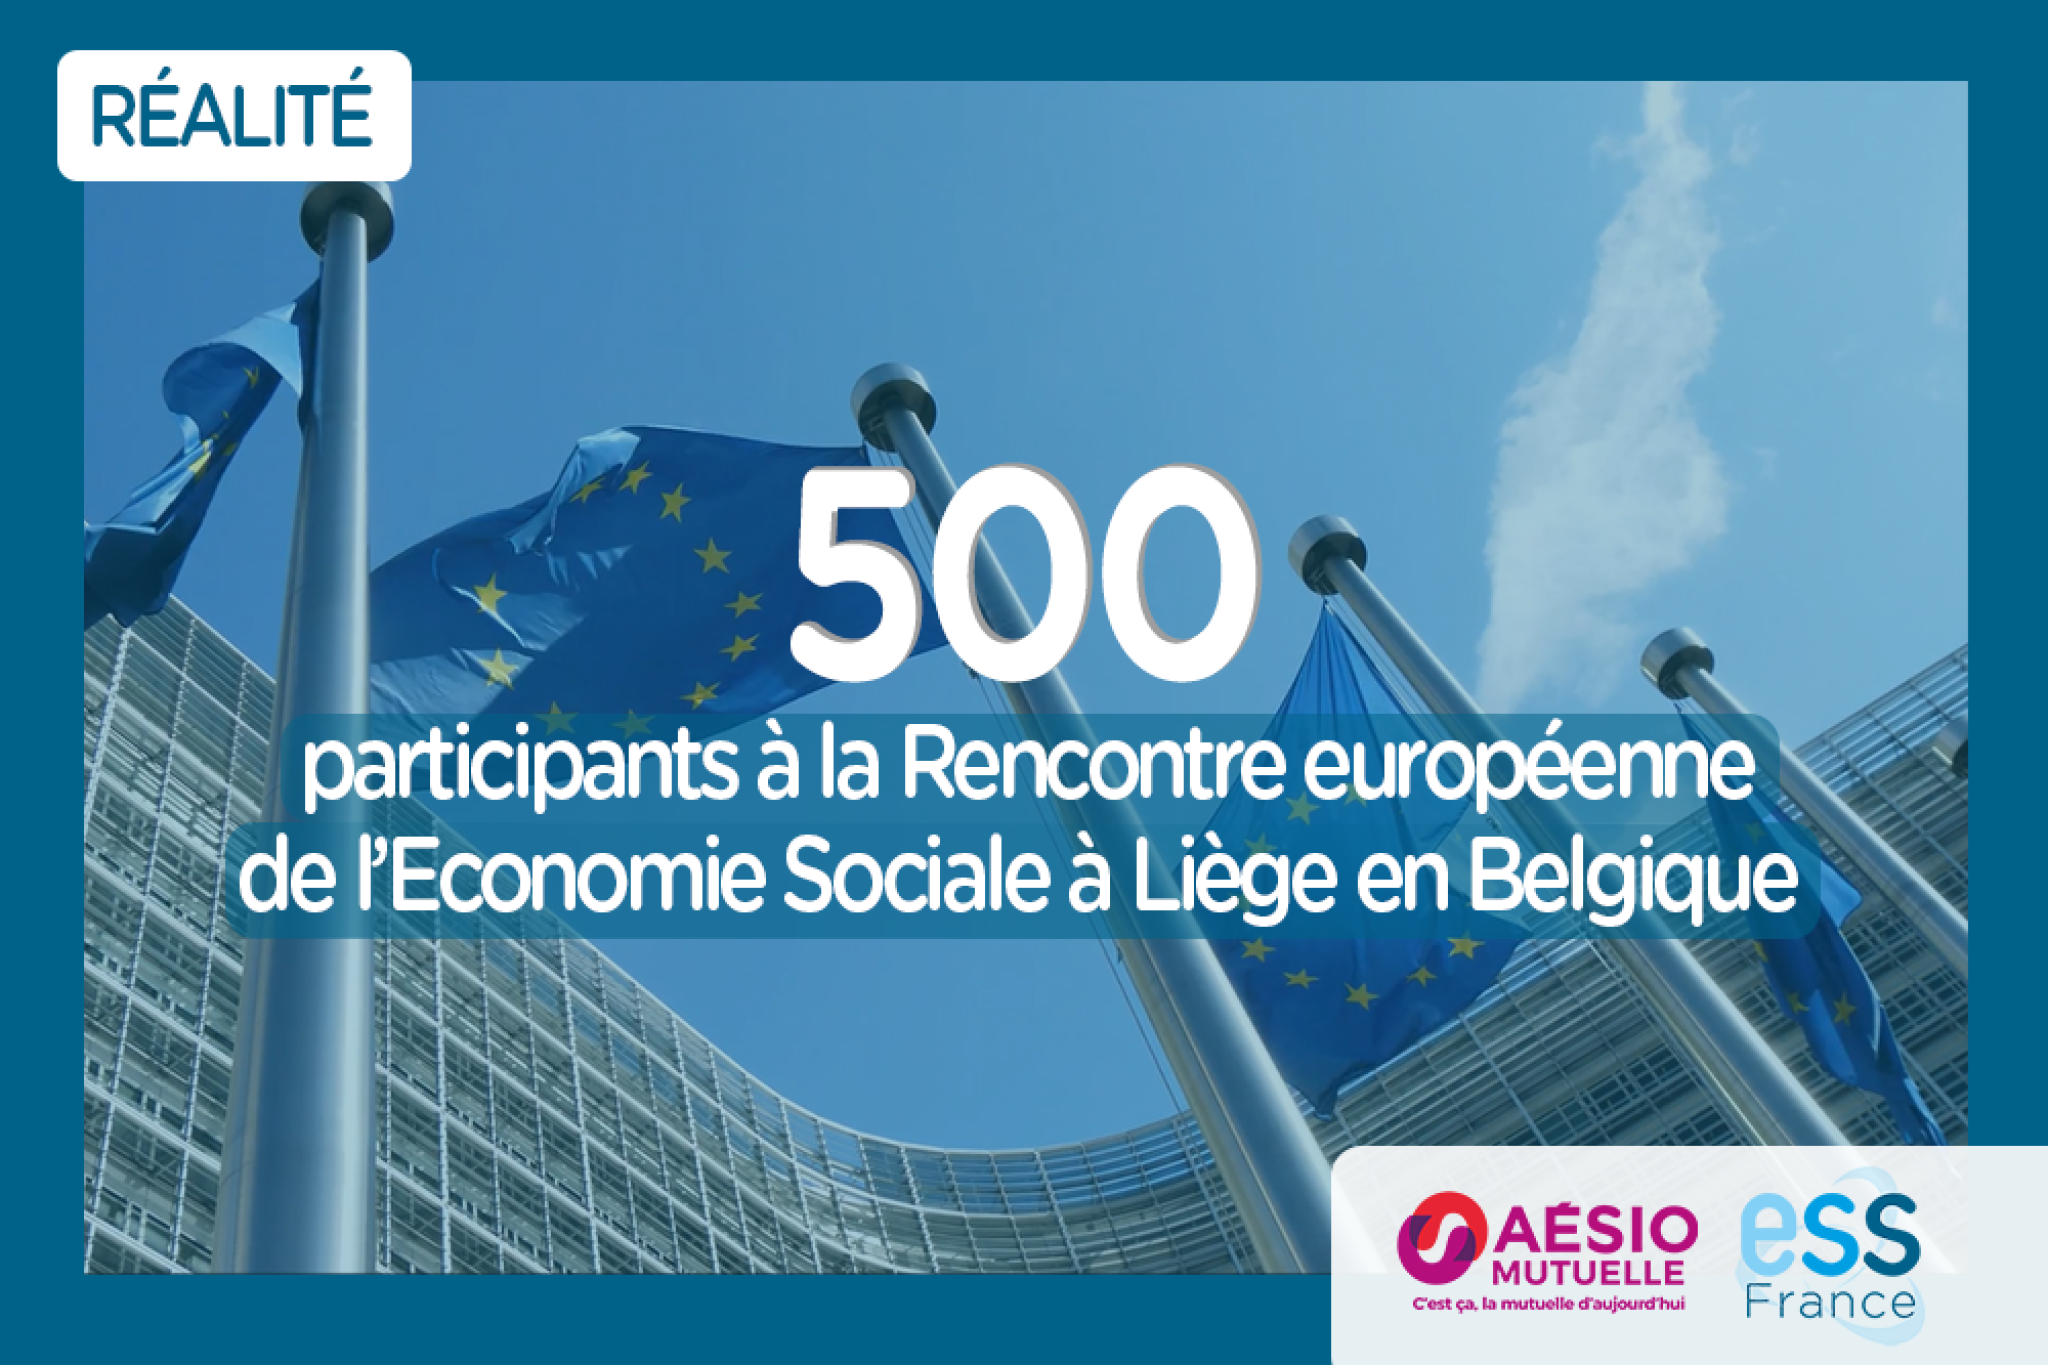 chiffre de la semaine : 500 participants à la Rencontre européenne de l'Economie Sociale à Liège en Belgique